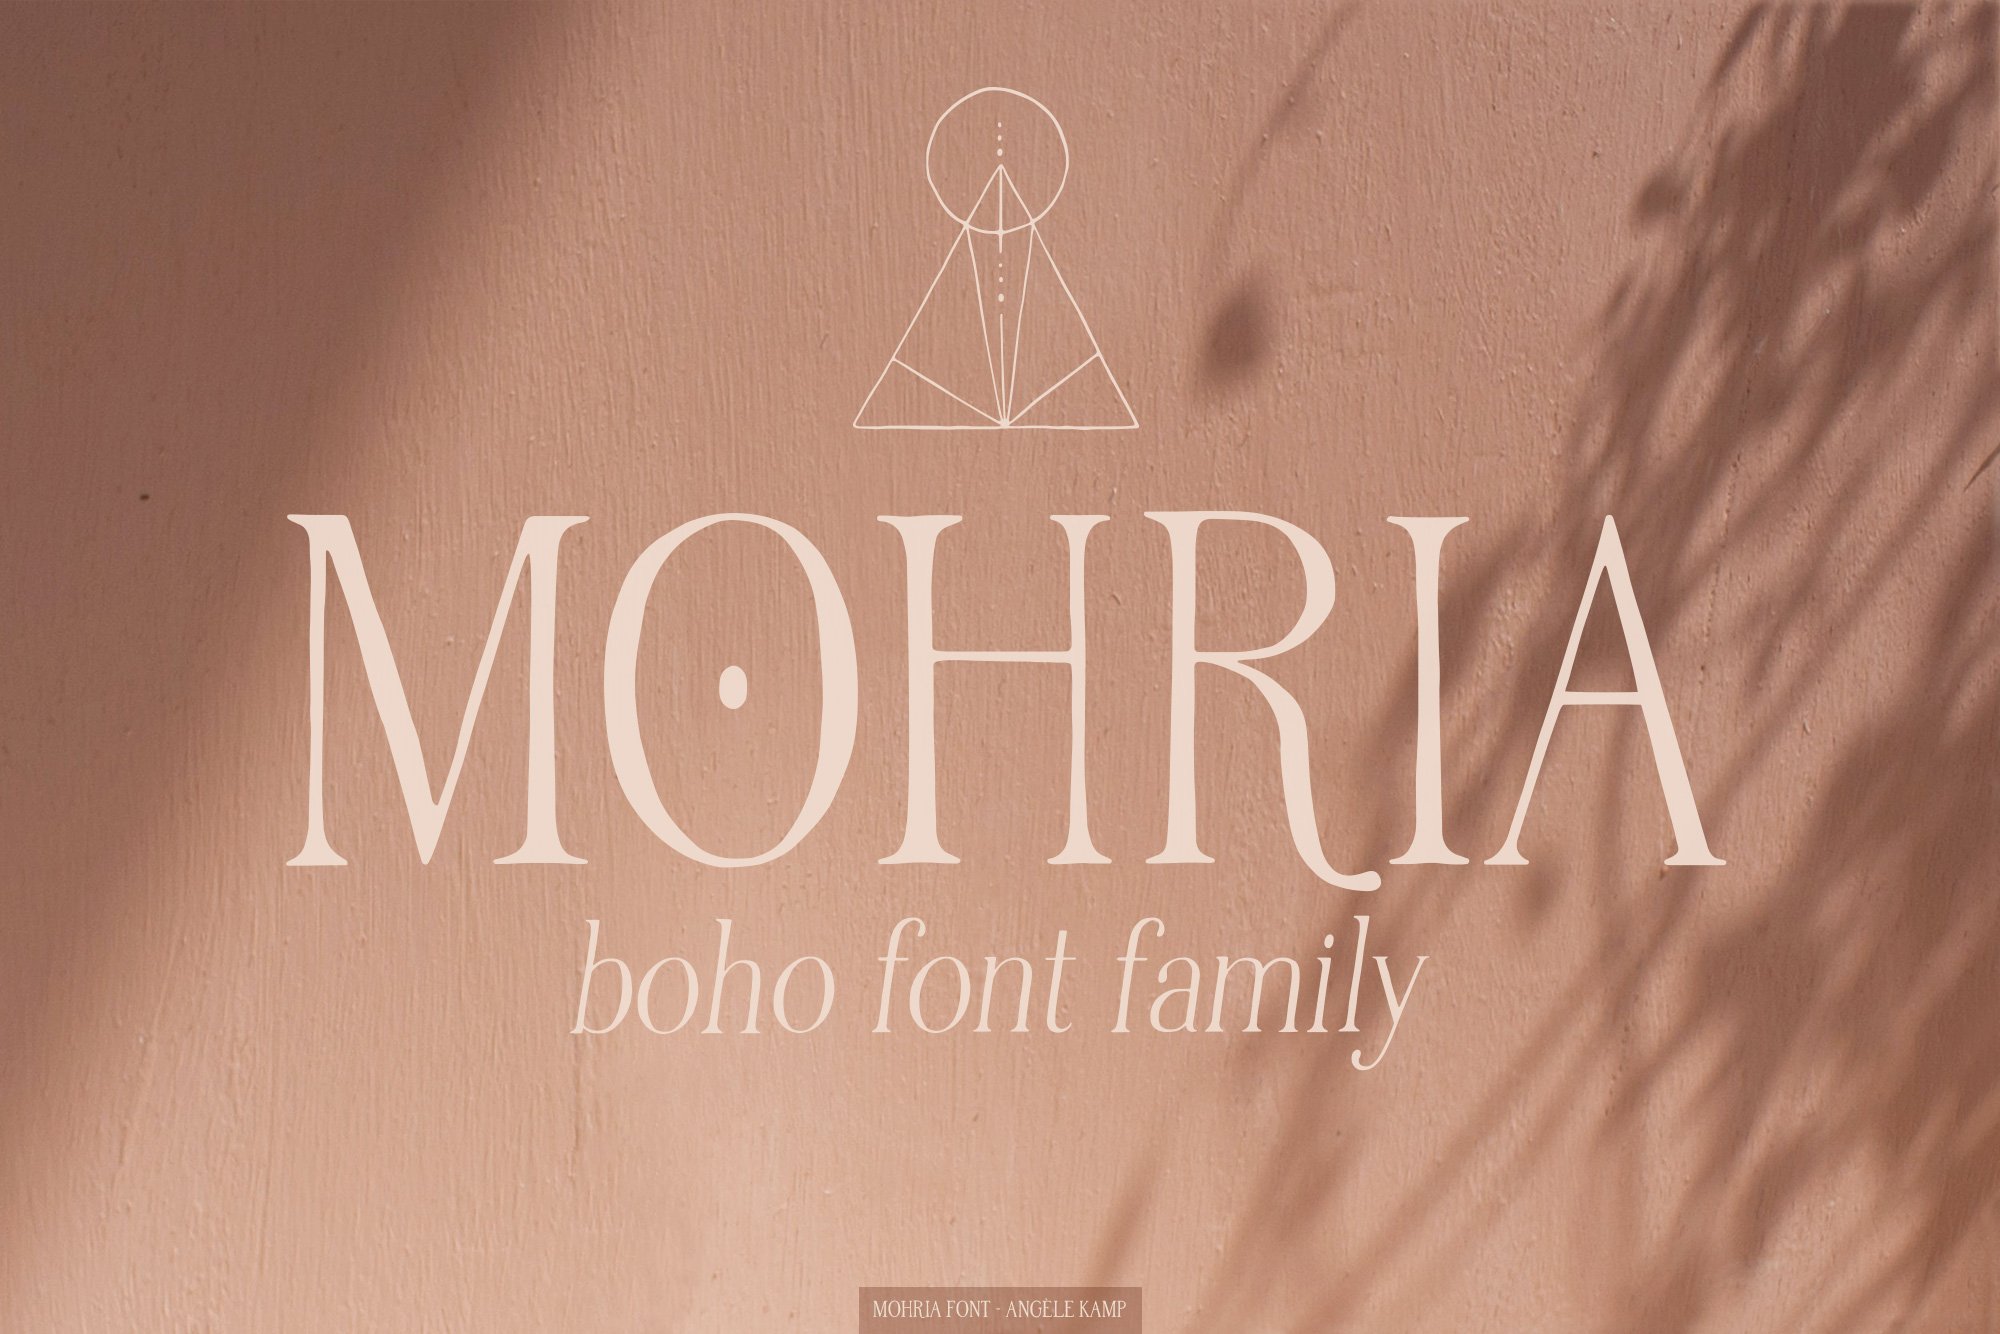 Mohria boho serif font script duo cover image.